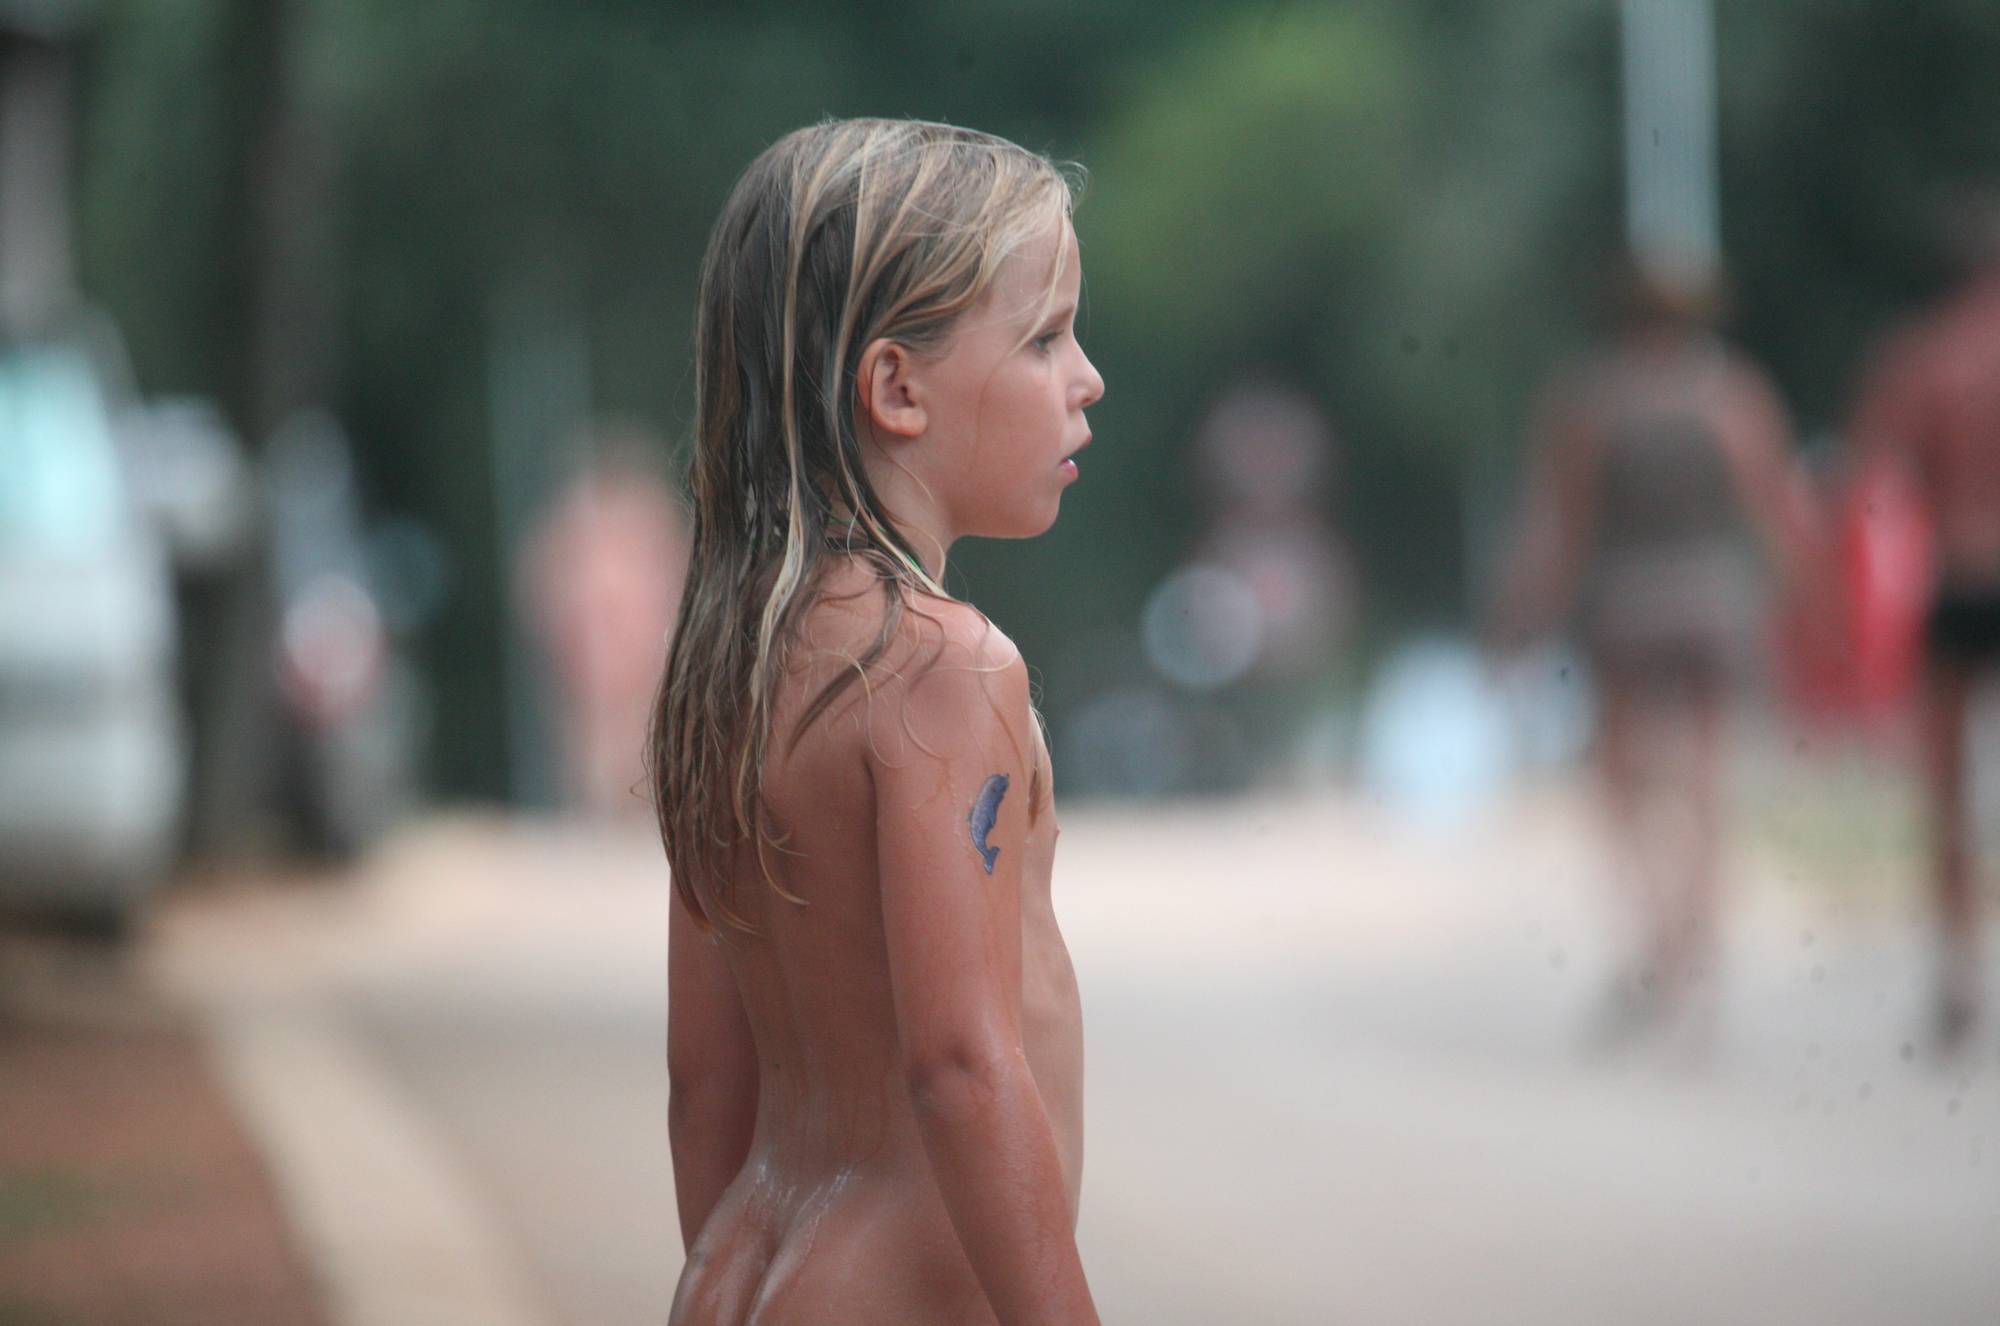 Pure Nudism Images Naturist Child on Sidewalk - 3